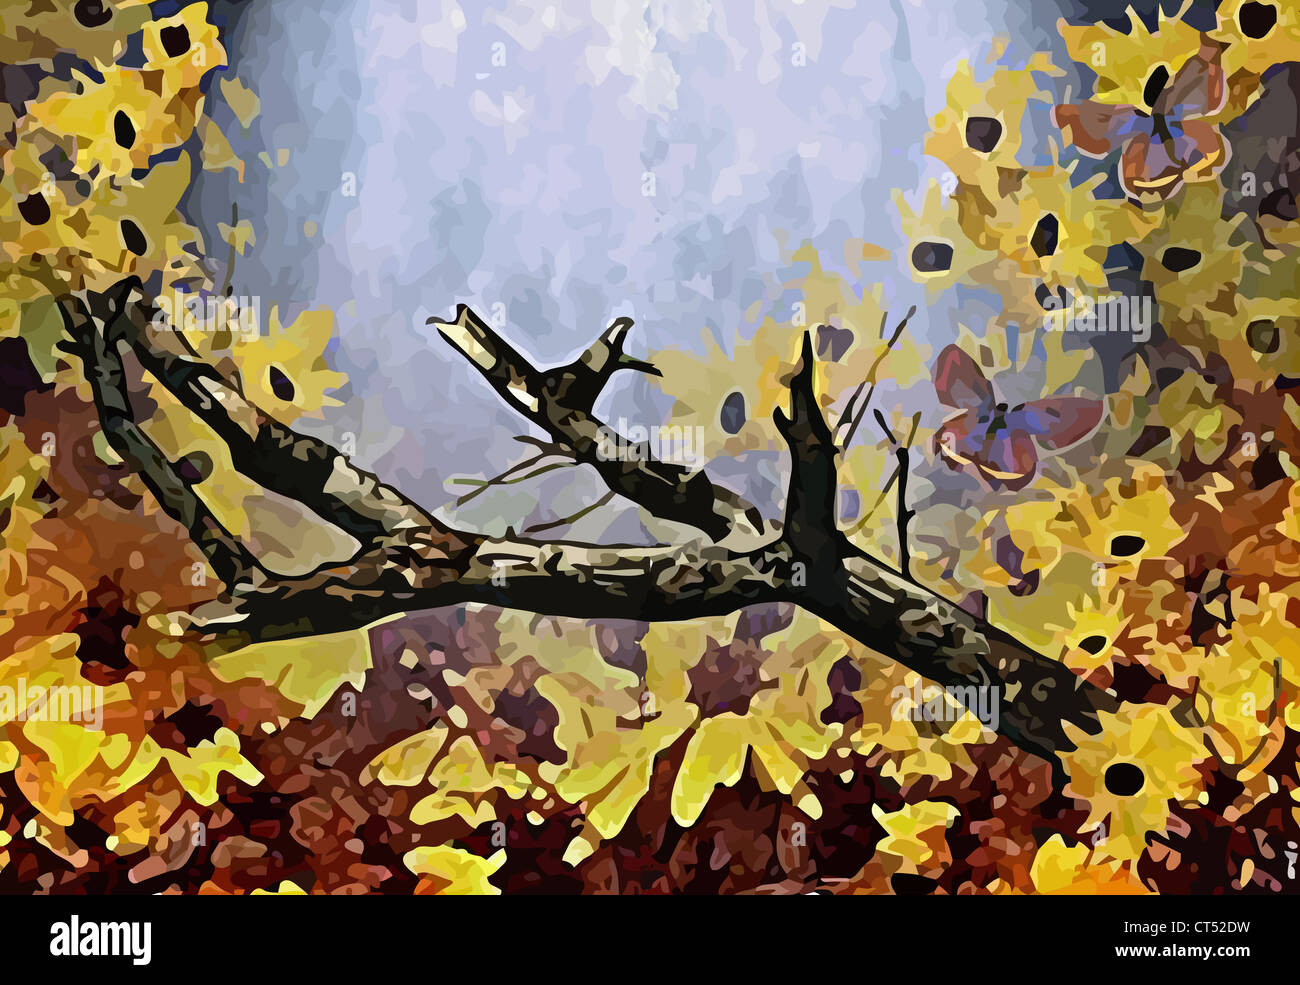 Illustration (vecteur) de semi une branche d'arbre dans la forêt avec des fleurs jaunes et de papillons Banque D'Images